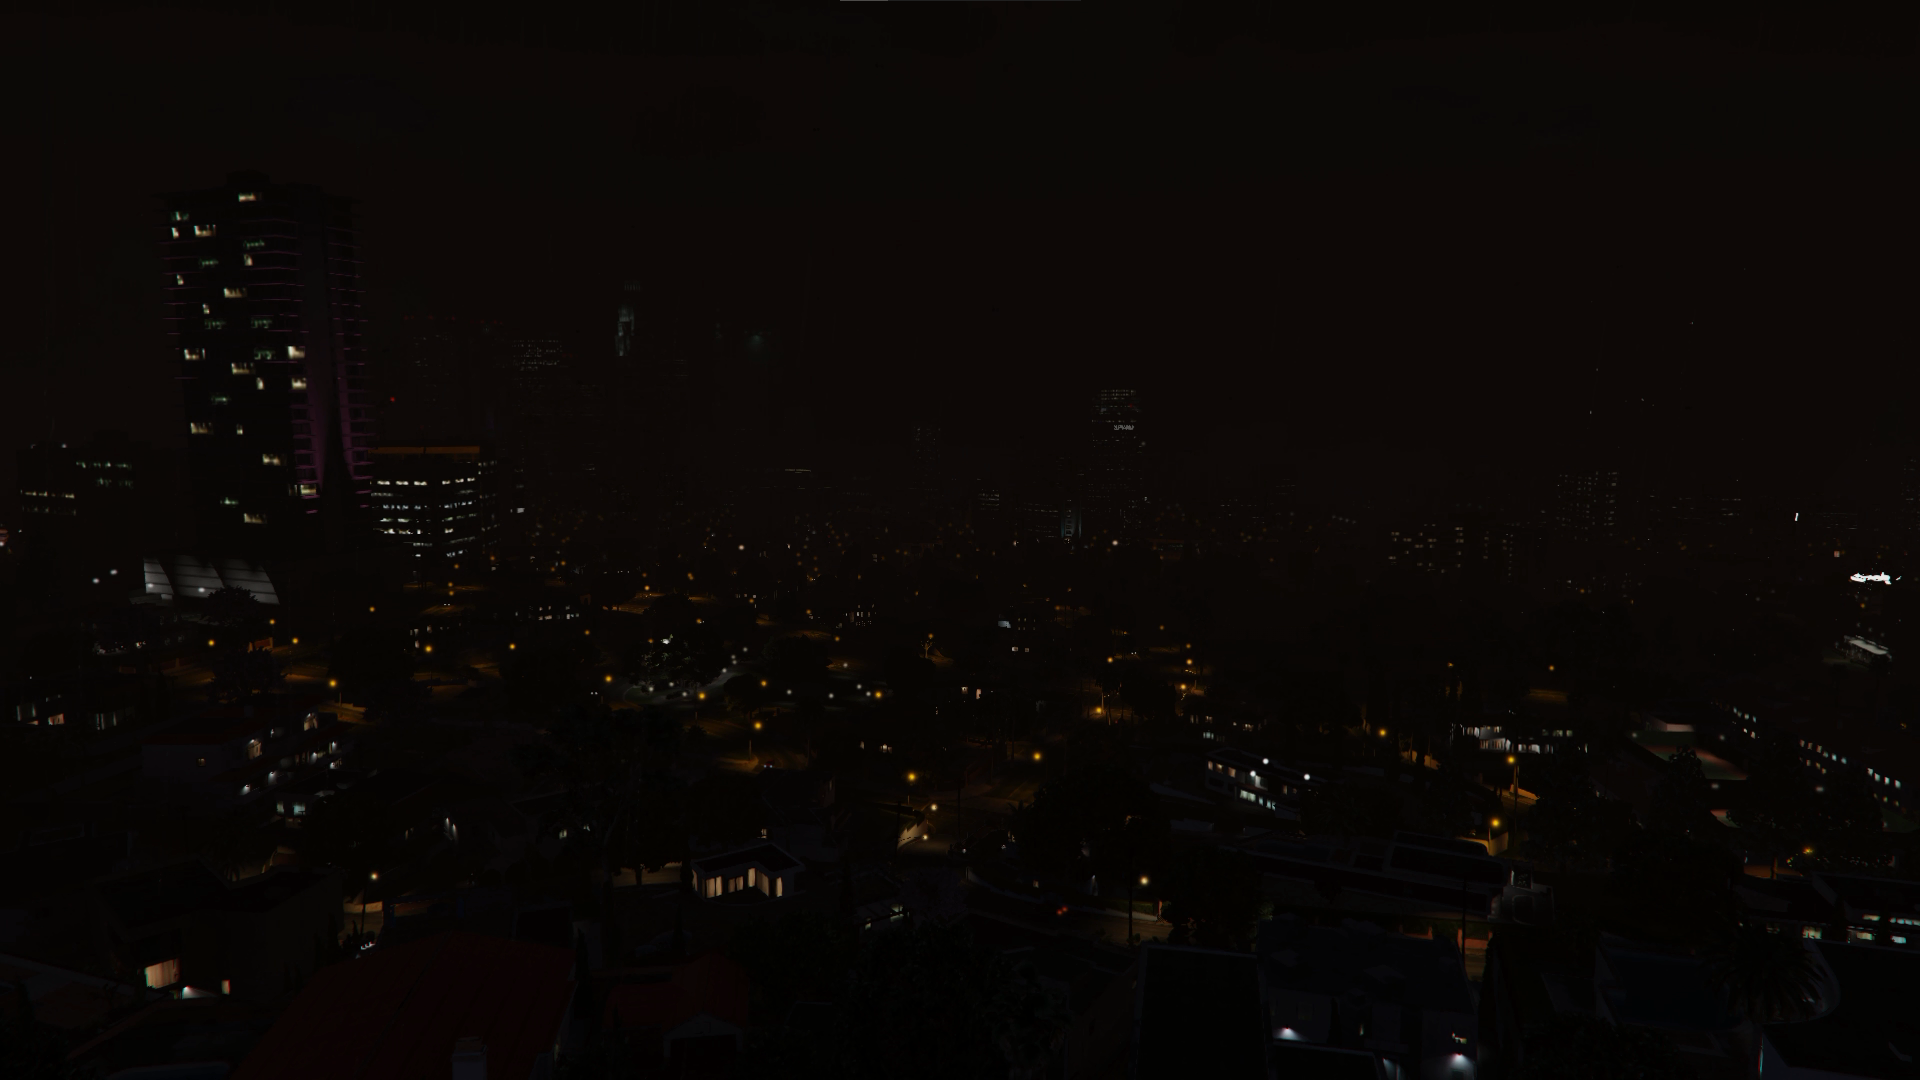 Grand Theft Auto V Night City Building 1920x1080